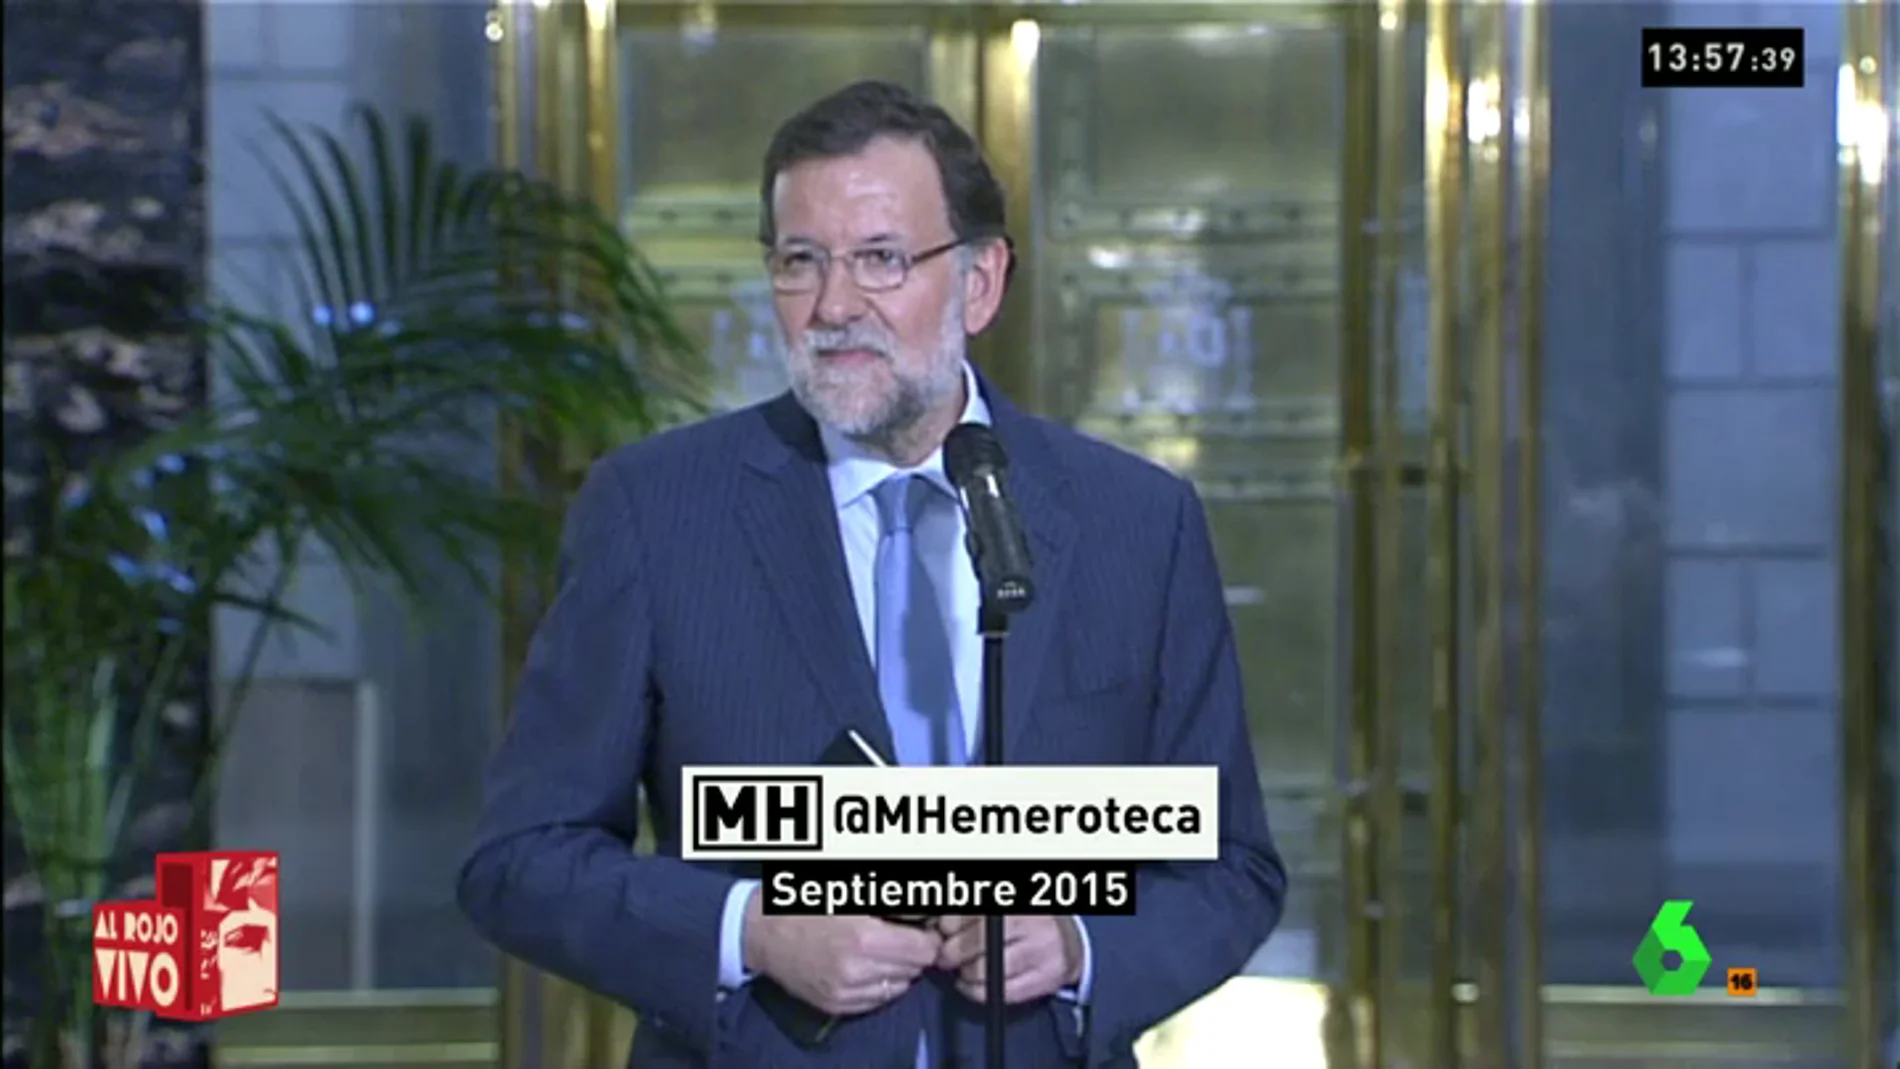 Frame 54.986169 de: "Ya veremos", el clásico recurso de Rajoy para dilatar los tiempos y esquivar las preguntas 